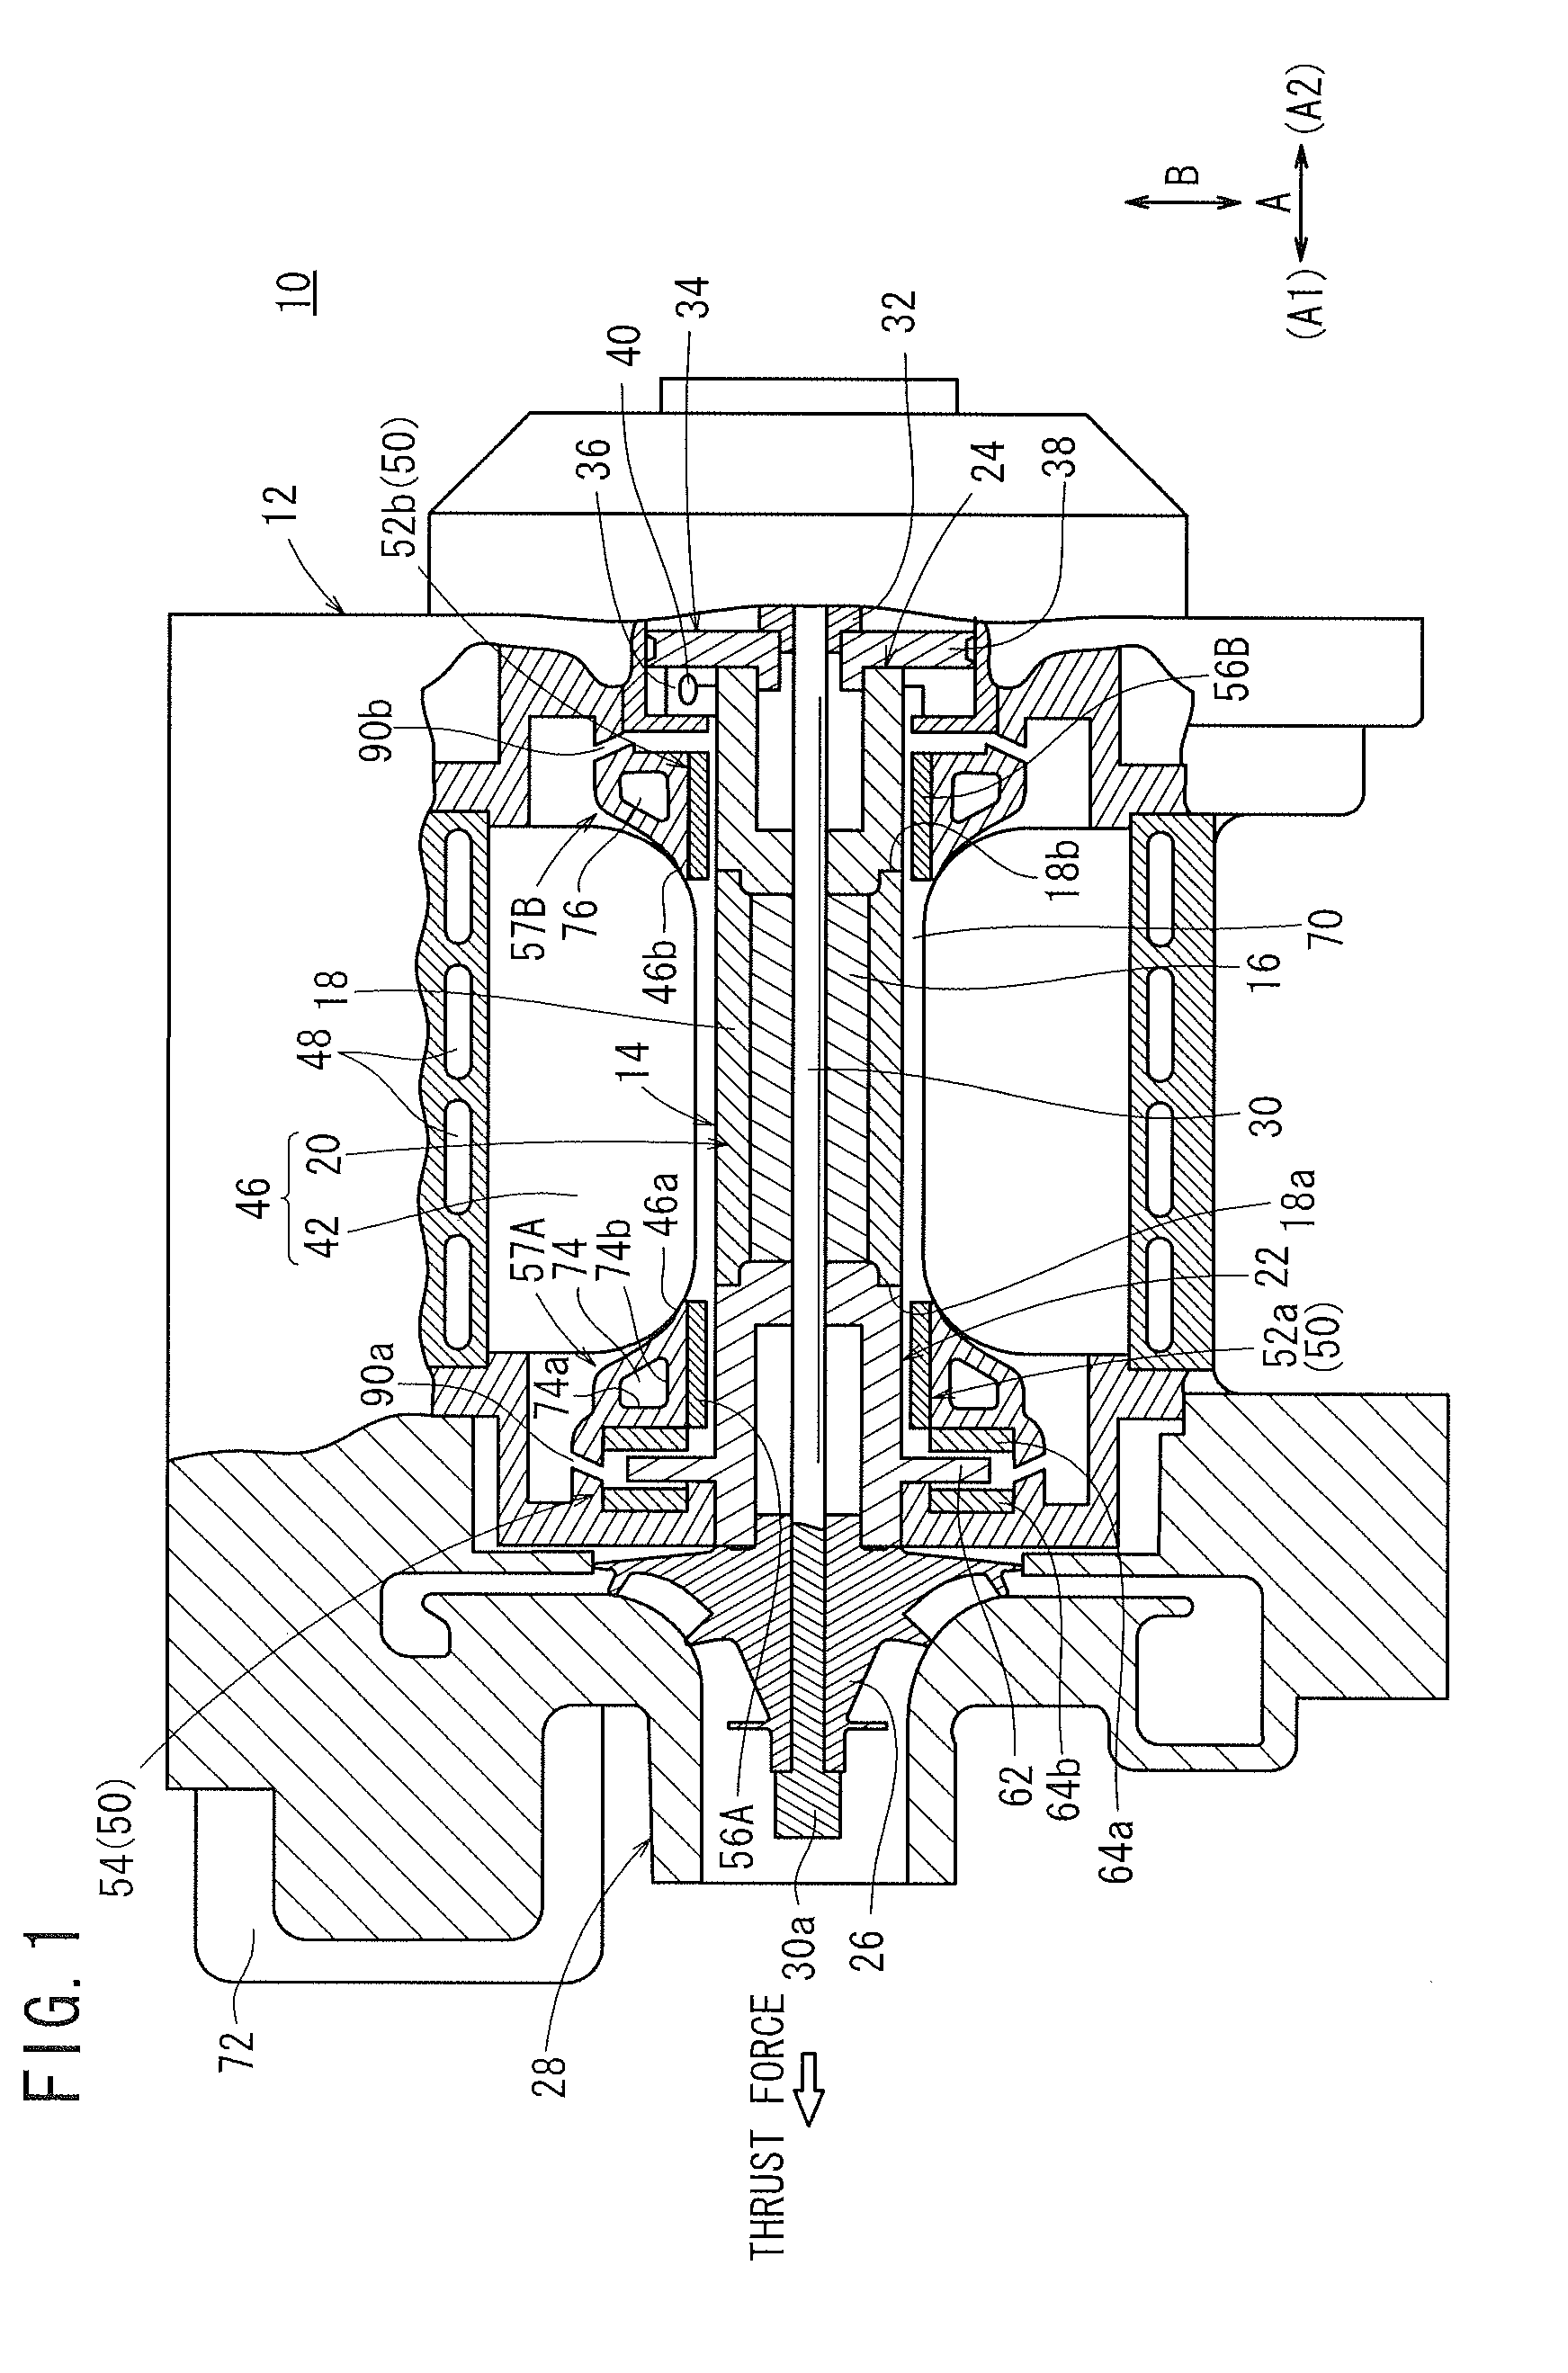 Motor-driven centrifugal compressor